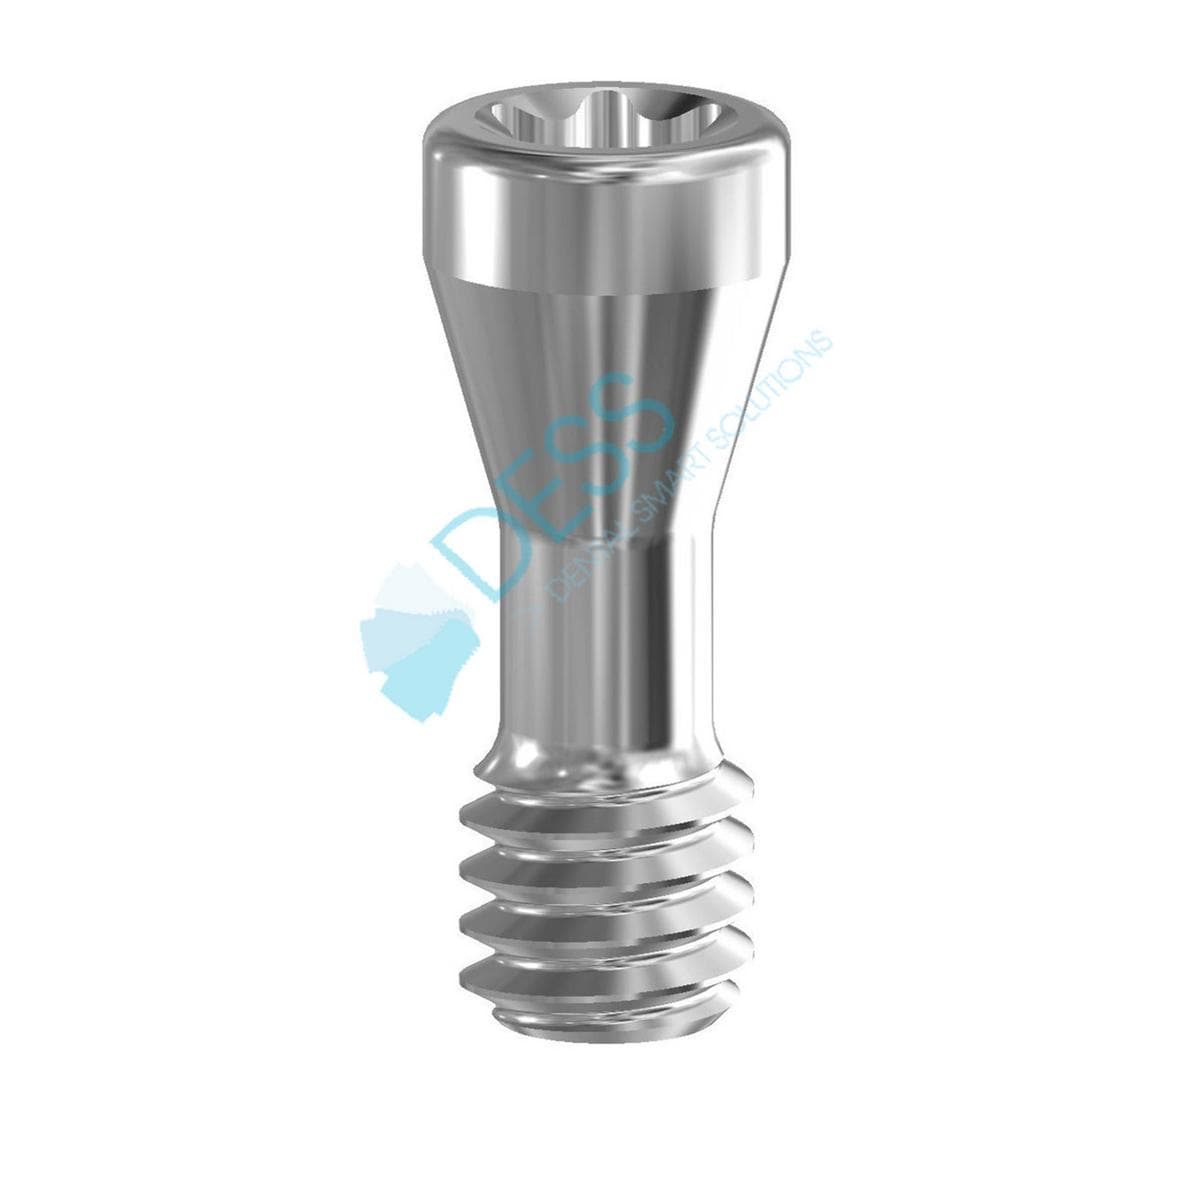 Abutmentschraube Torx® auf Implantat - kompatibel mit Straumann® - RN Ø 4,8 mm / WN Ø 6,5 mm, TIN-Beschichtung, Packung 1 Stück